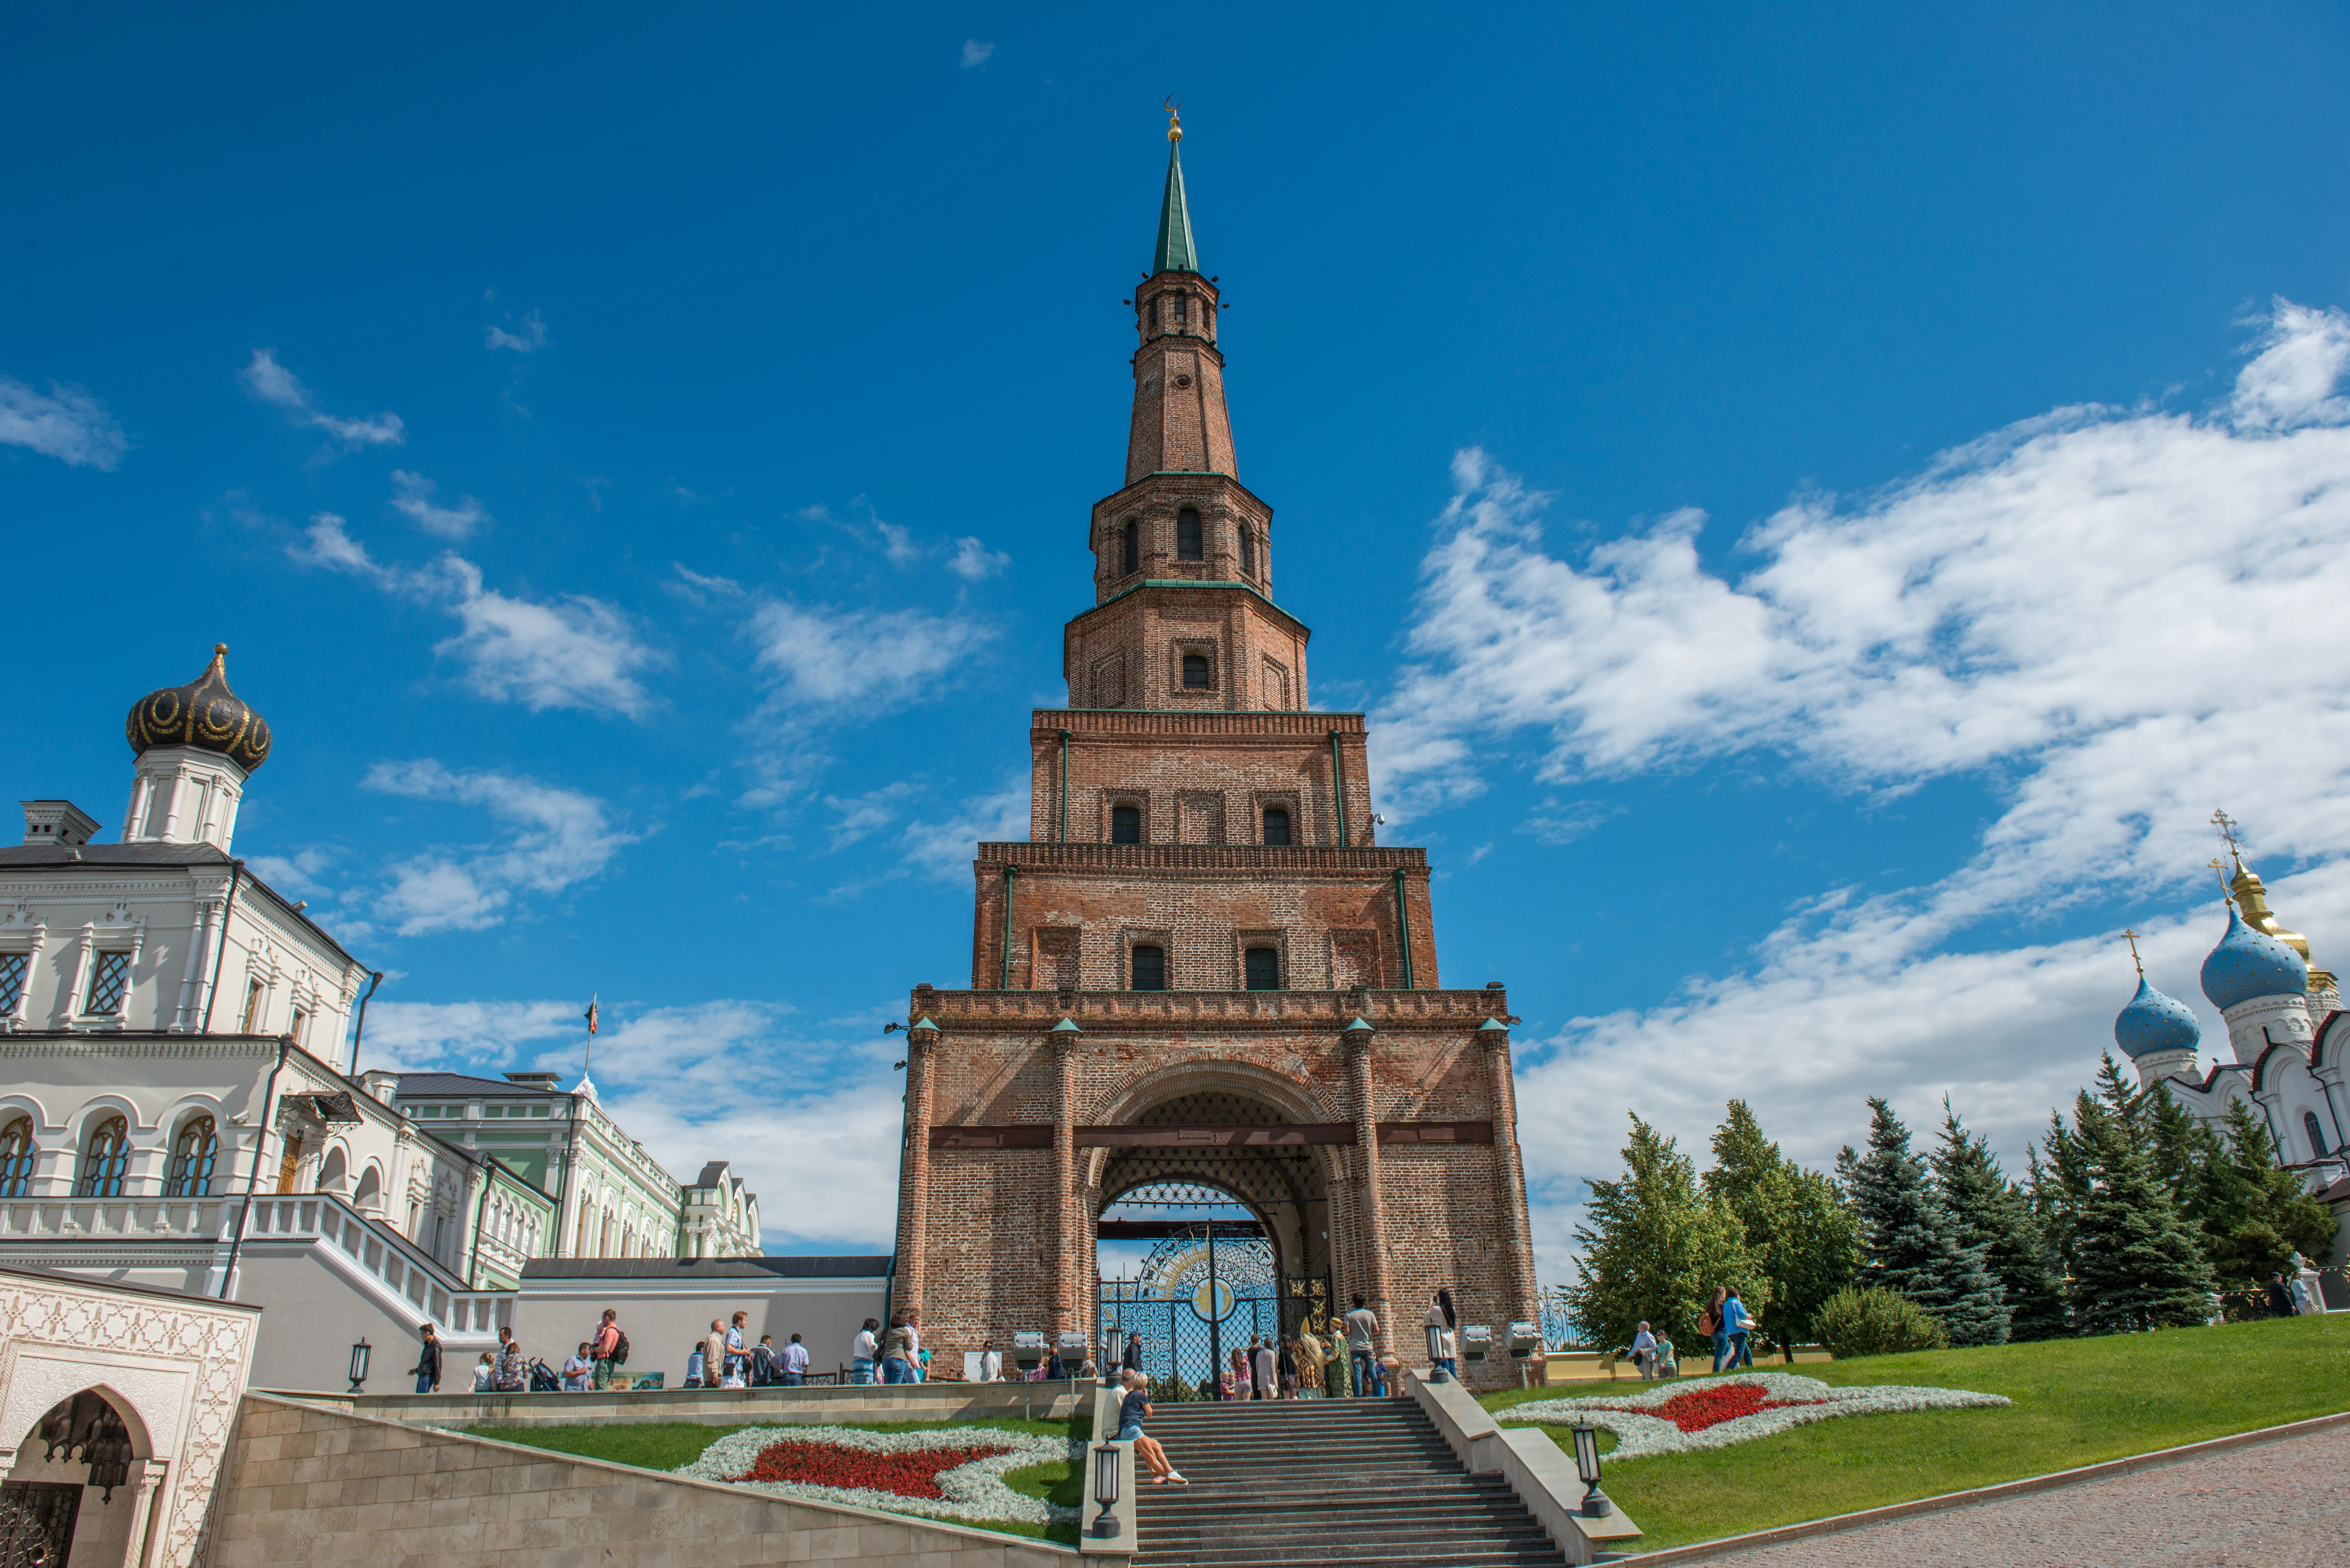 Sightseeing tour of Kazan with a visit to the Kazan Kremlin